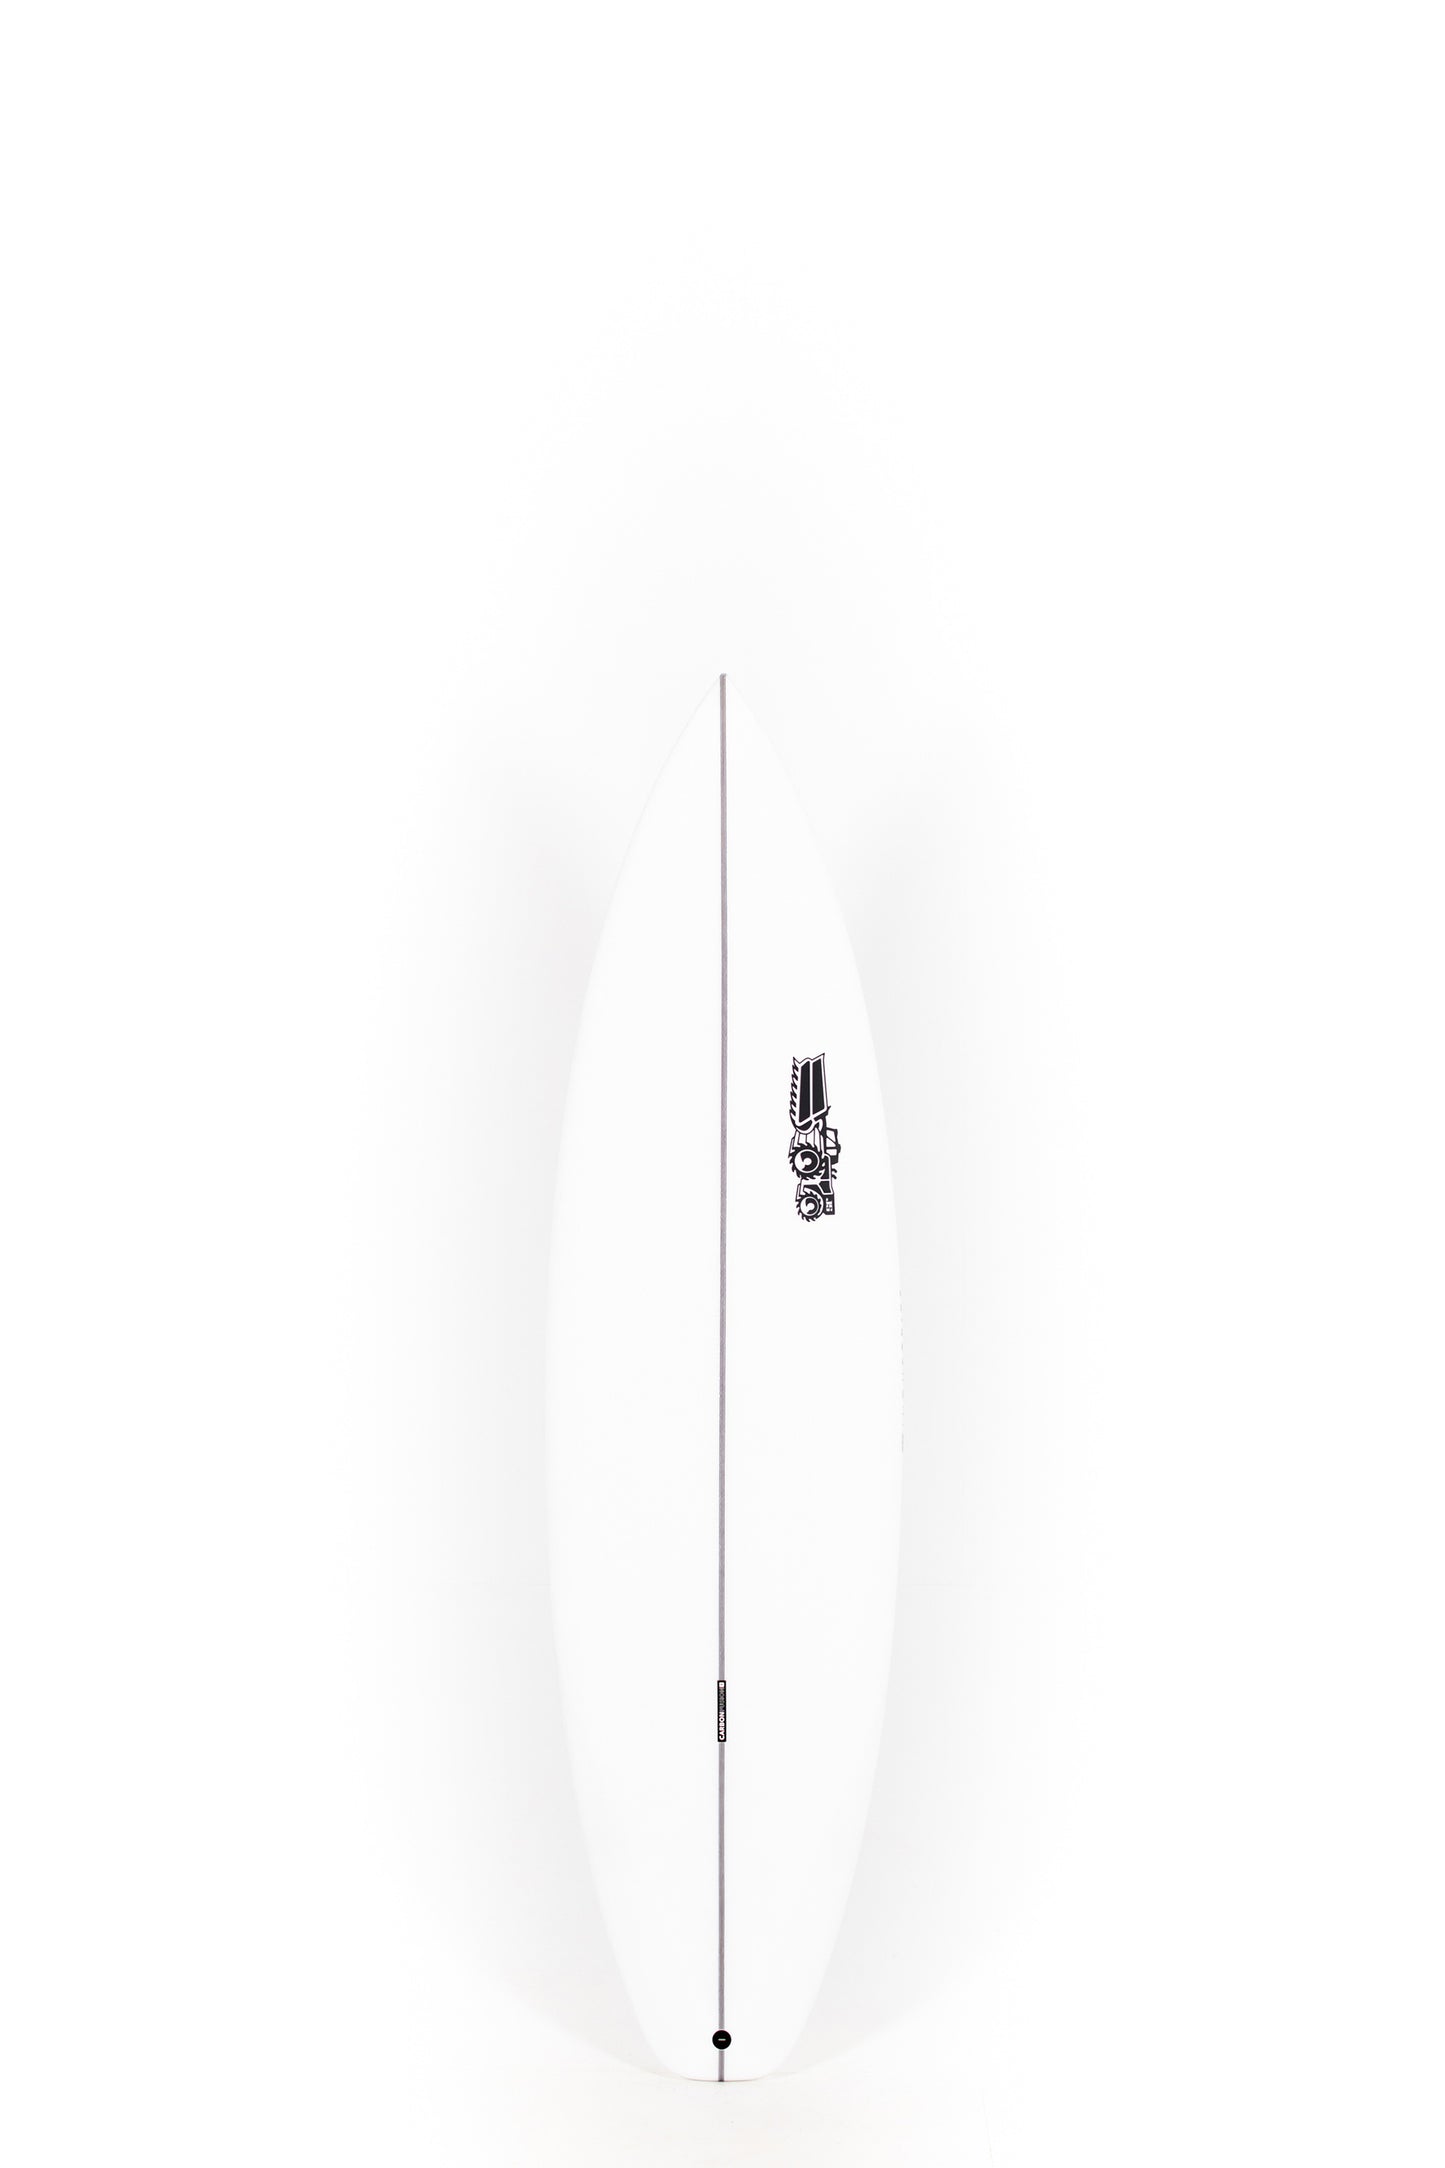 Pukas Surf Shop - JS Surfboards - MONSTA 2020 - 6'2" x 19 1/8 x 2 7/16 x 30.5L. - MONSTA202062